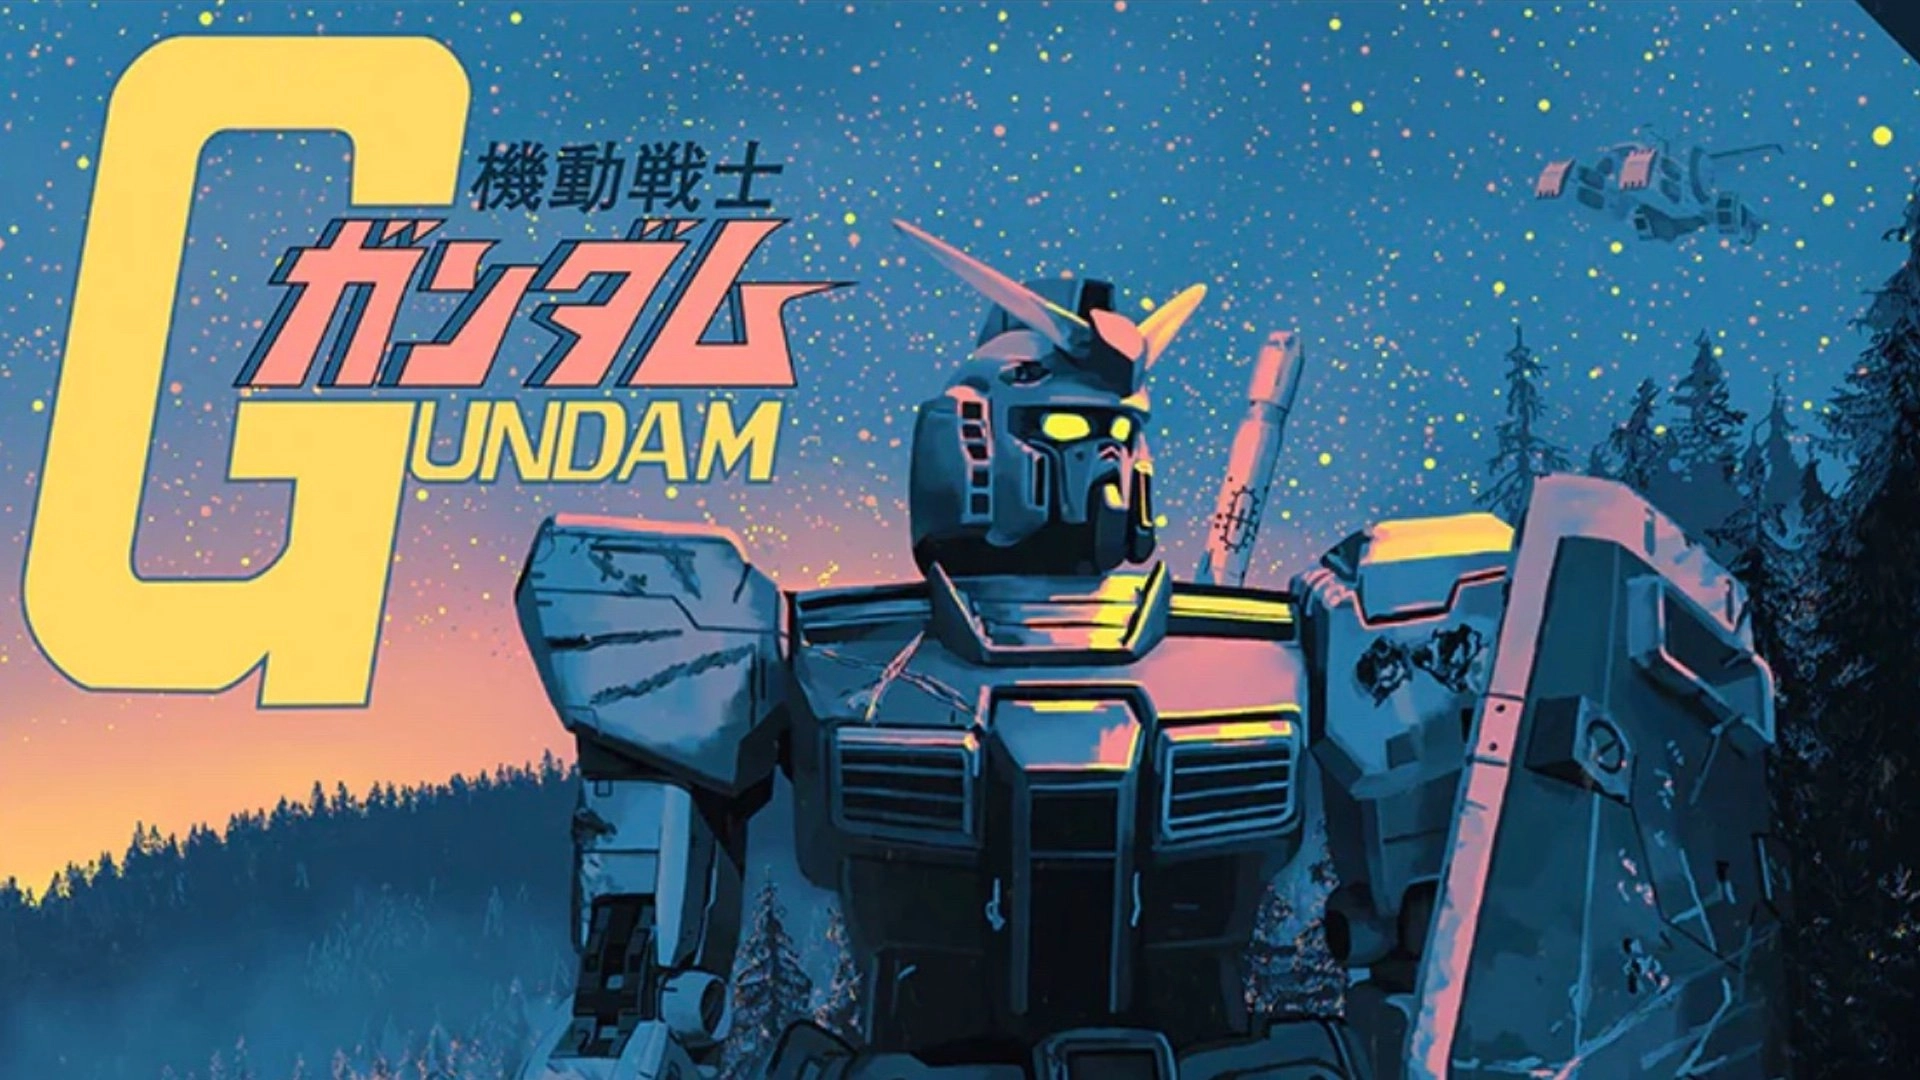 Cómo ver Gundam en orden: Una guía para entrar a esta saga